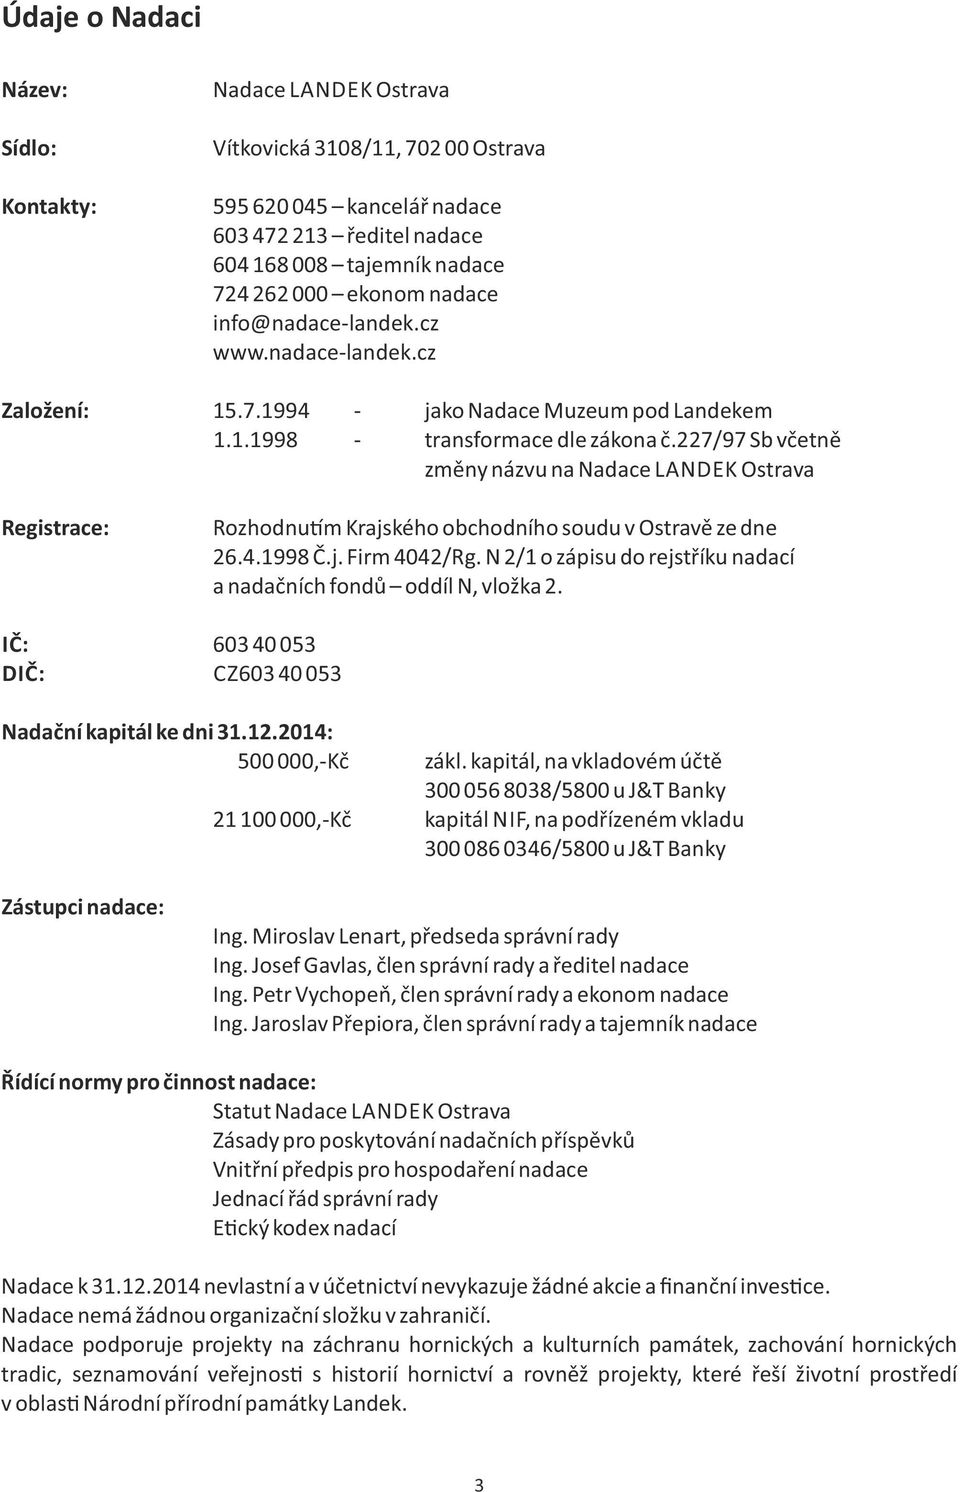 227/97 Sb včetně změny názvu na Nadace LANDEK Ostrava Registrace: Rozhodnu m Krajského obchodního soudu v Ostravě ze dne 26.4.1998 Č.j. Firm 4042/Rg.